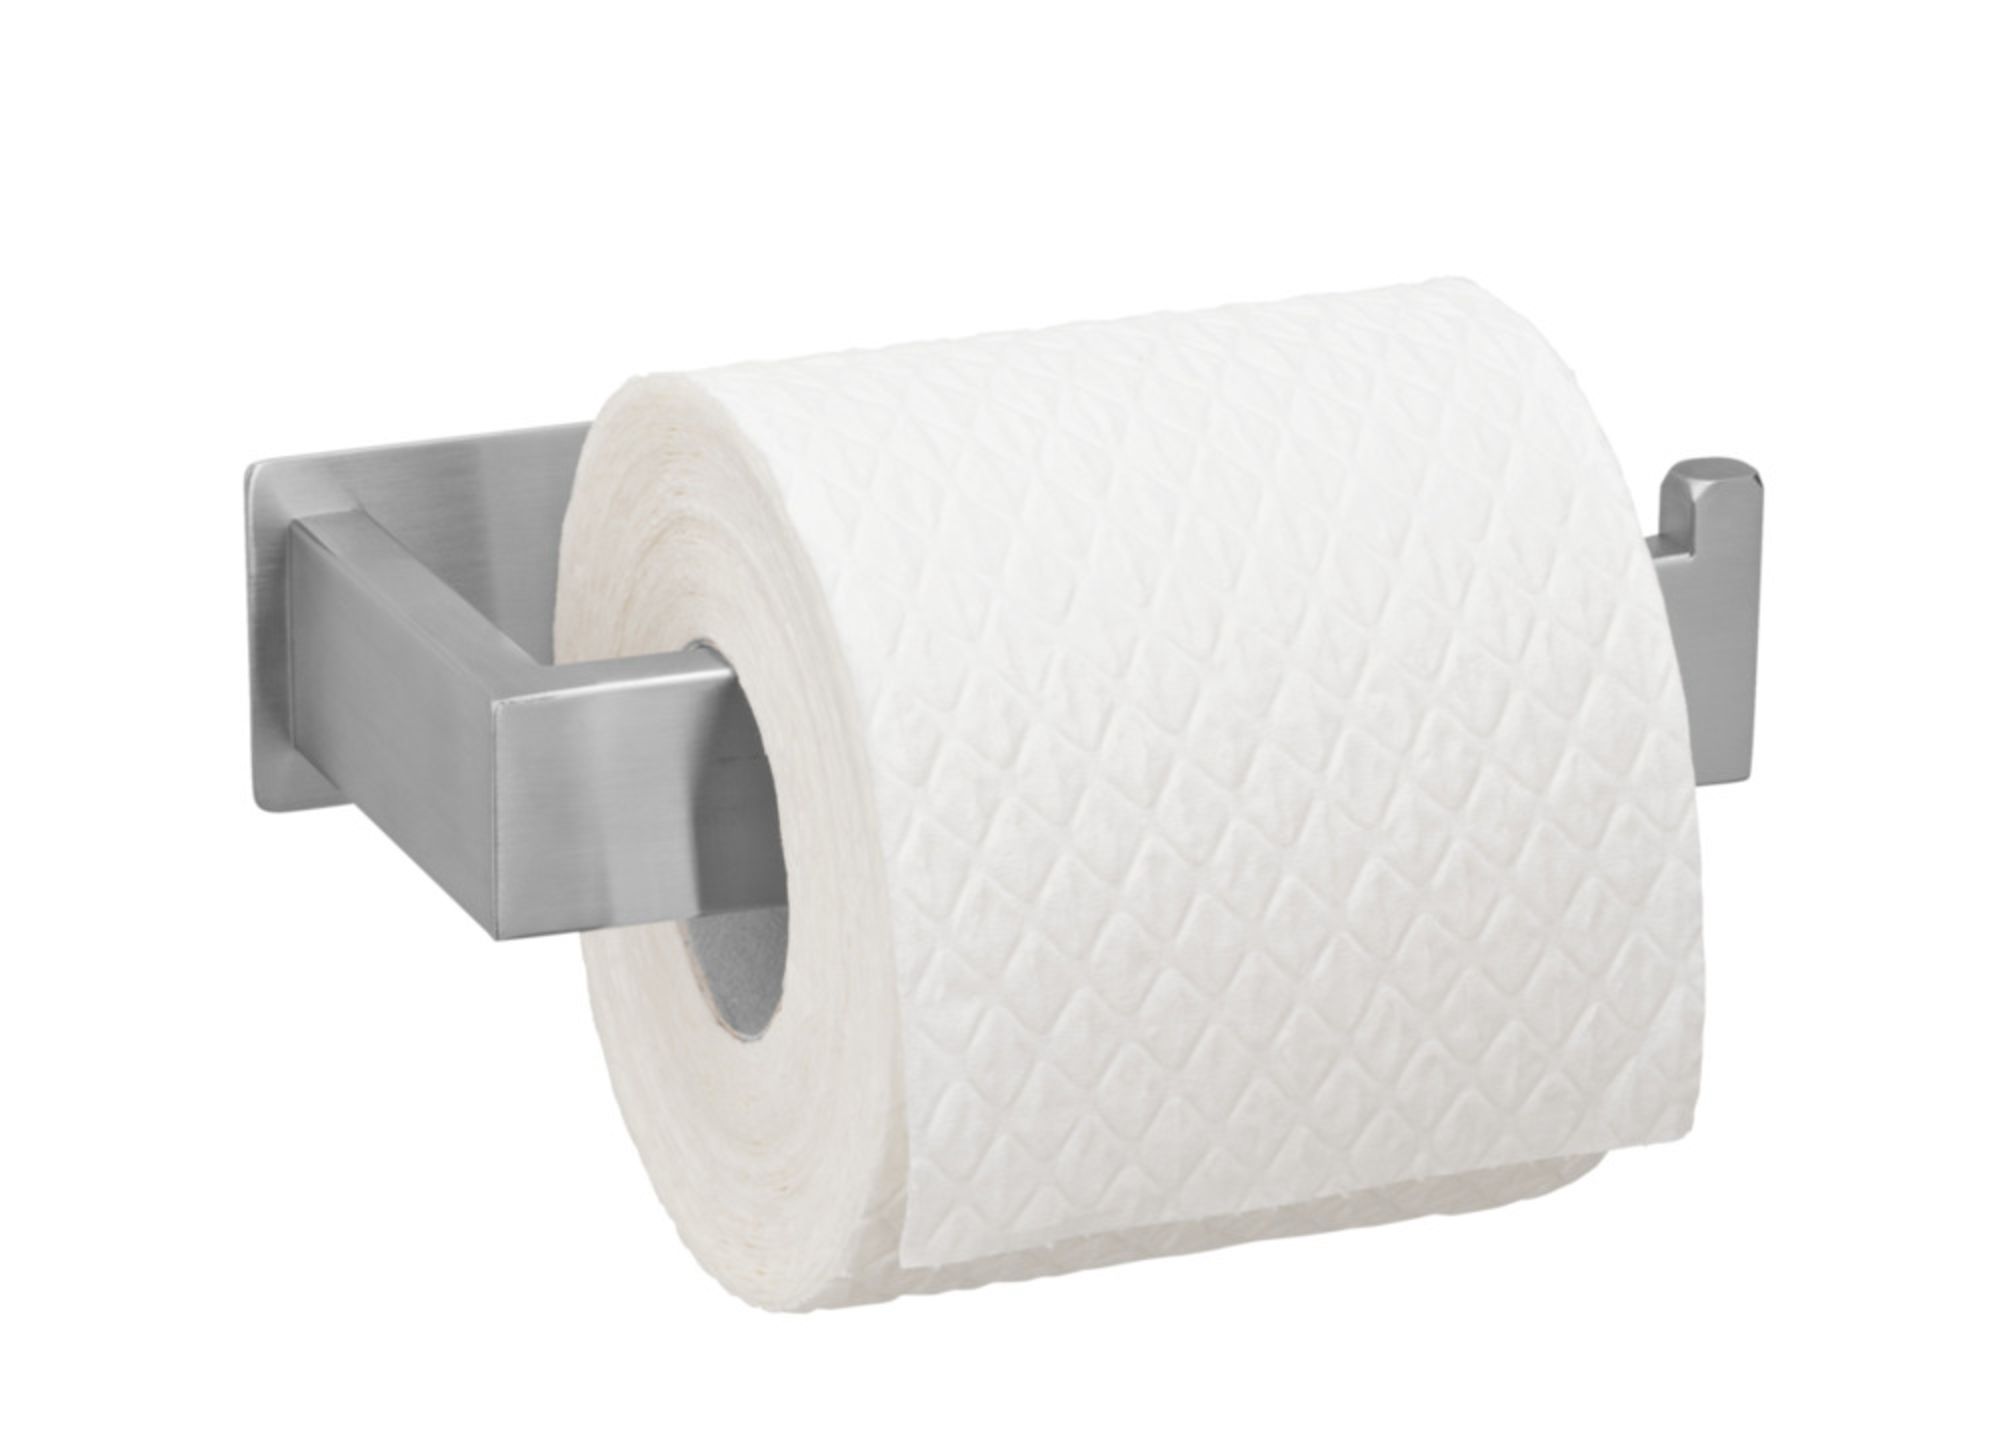 Turbo-Loc® Toilettenpapierhalter Genova Shine, Befestigen ohne bohren  online bestellen